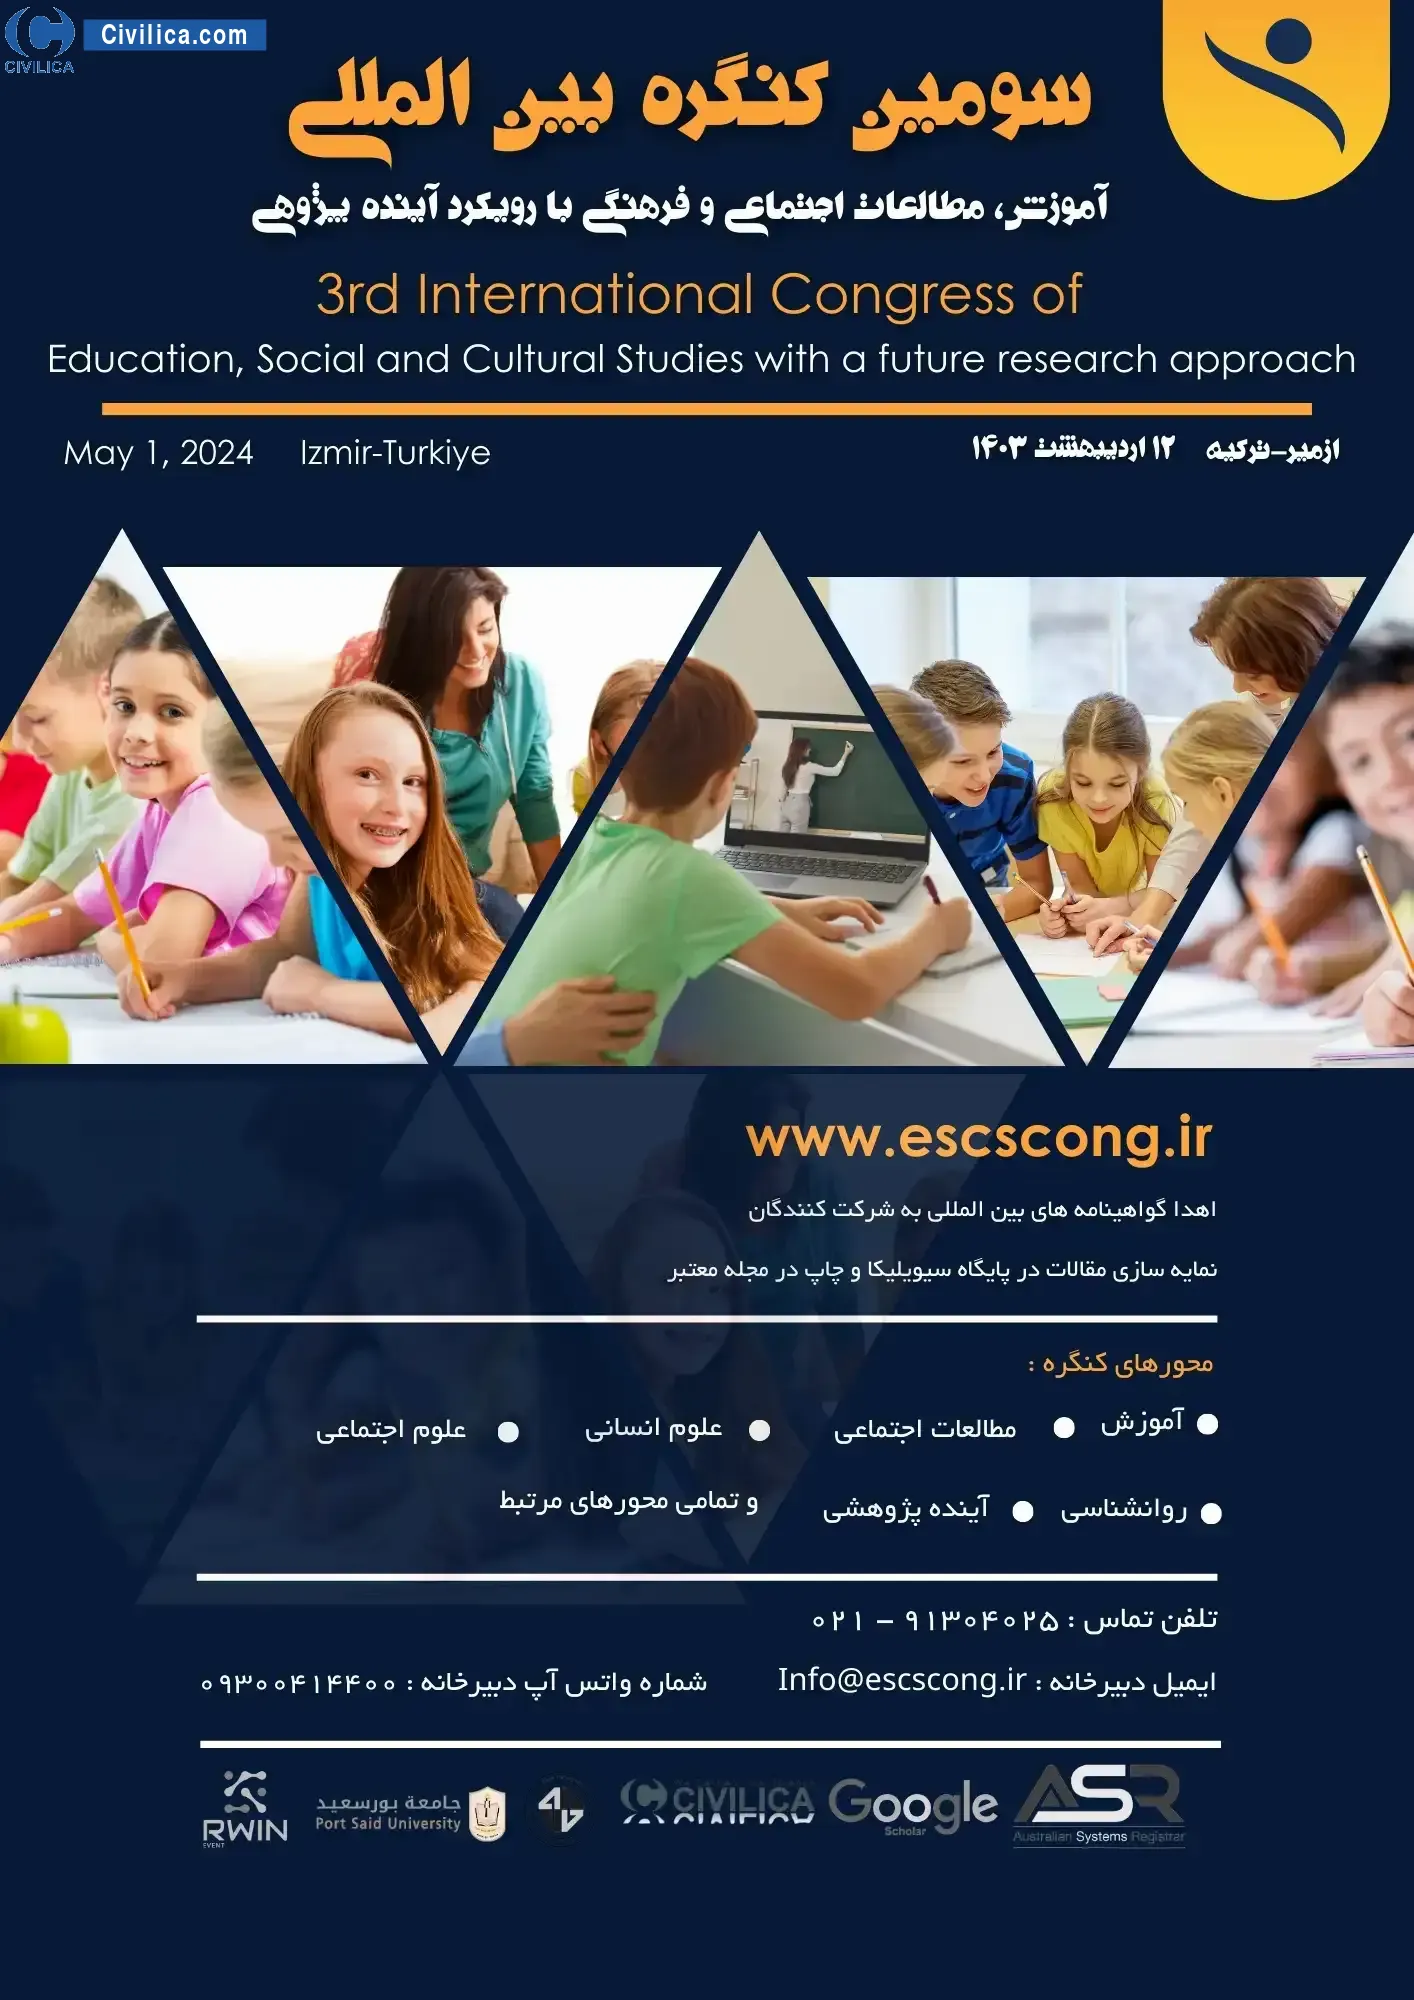 سومین کنگره بین المللی آموزش، مطالعات اجتماعی و فرهنگی با رویکرد آینده پژوهی